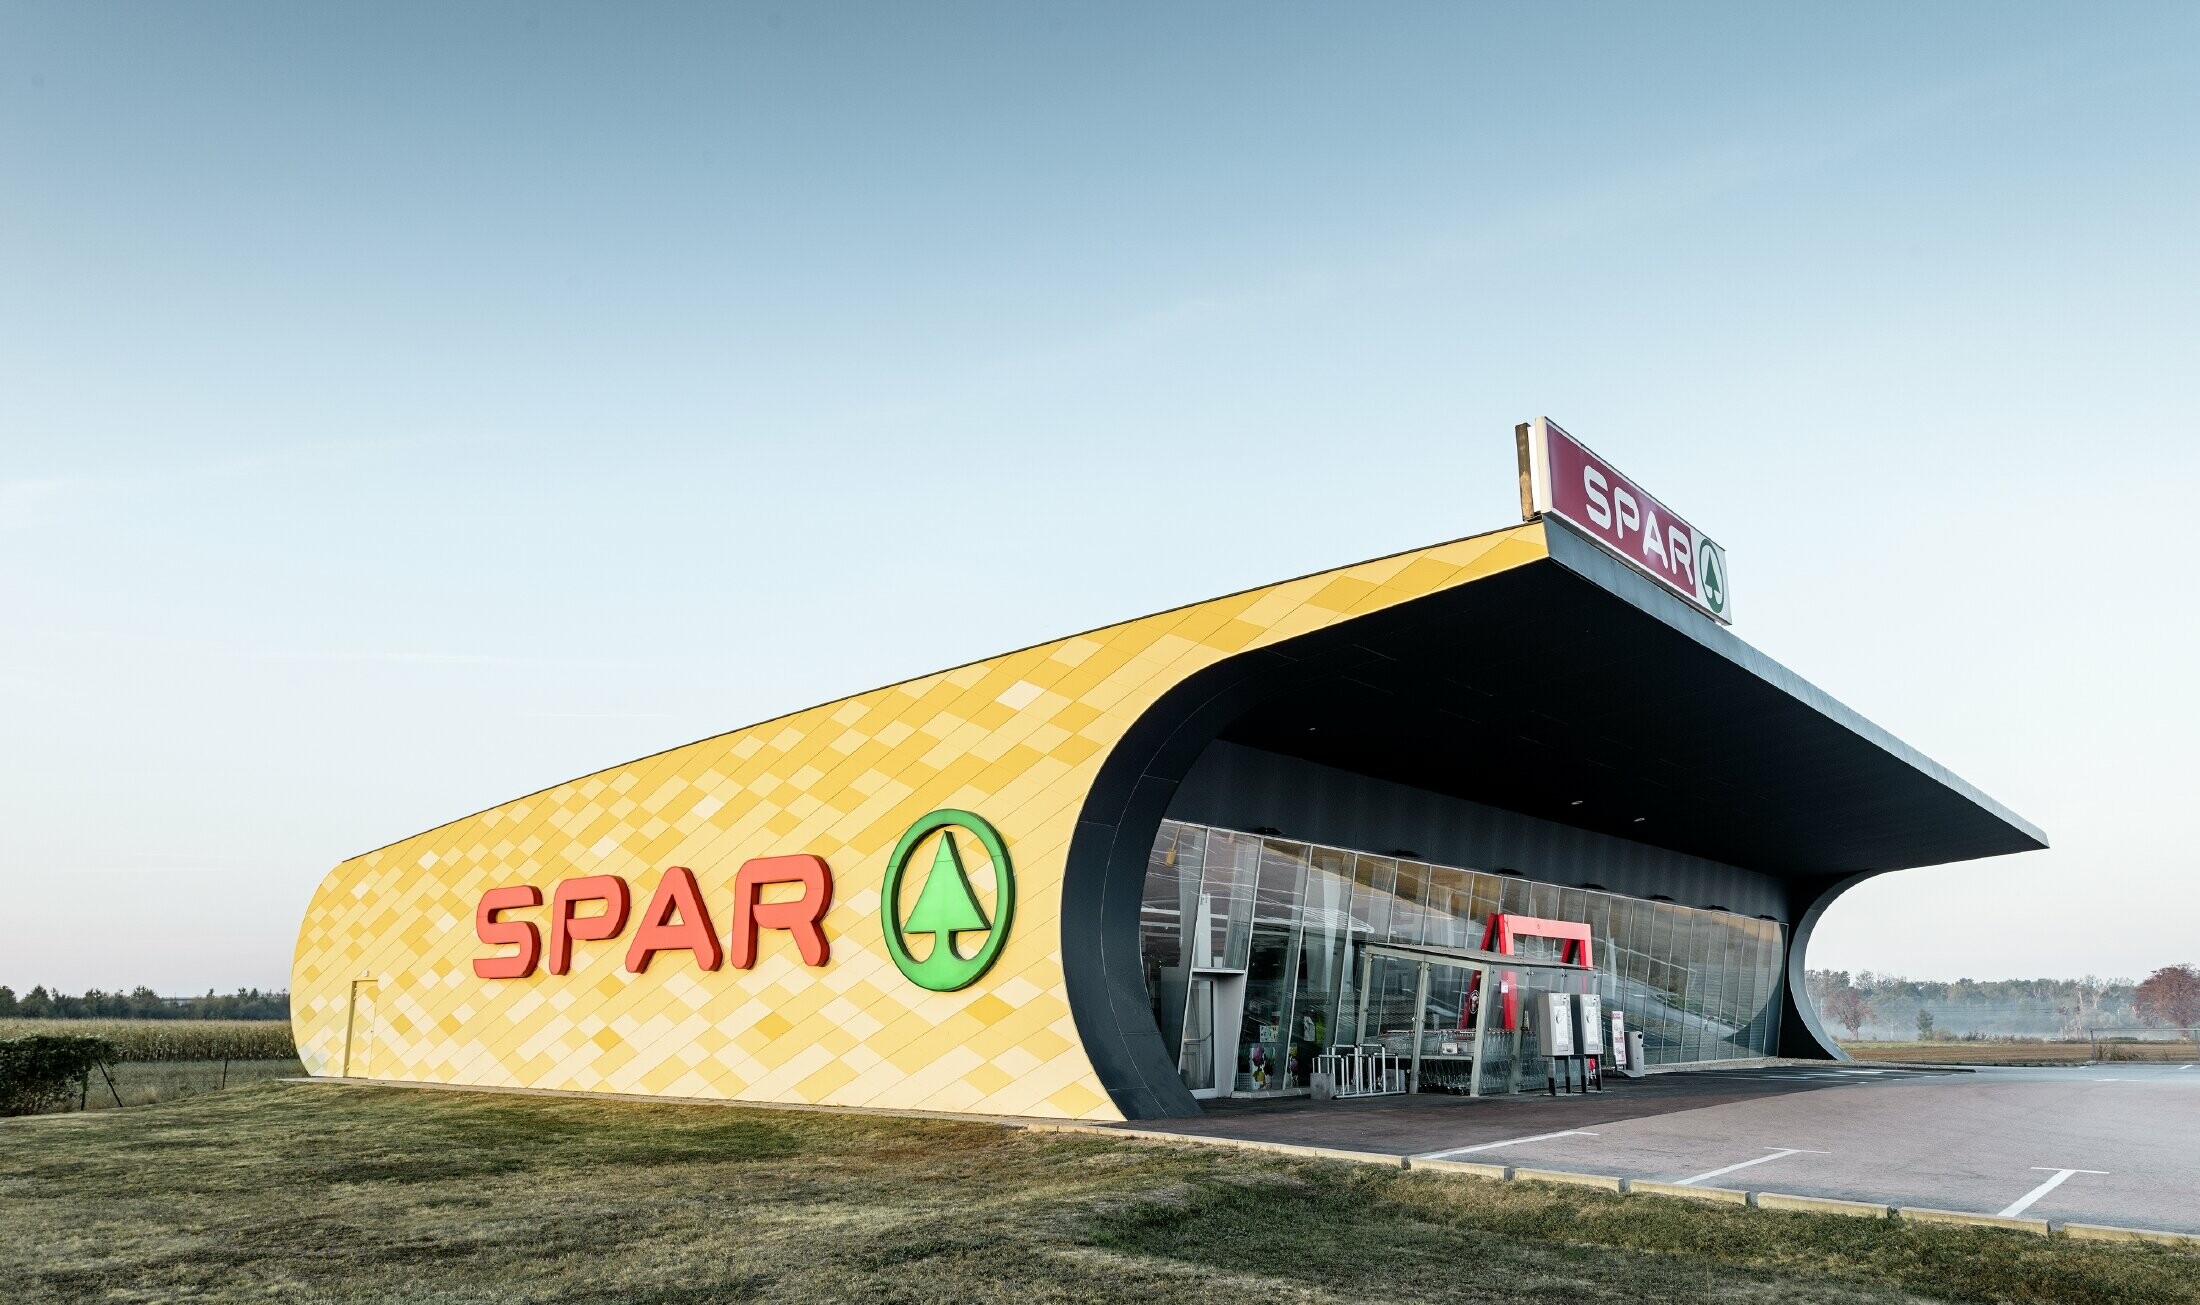 Spar-filial med aluminiumsfasade i gul-oransje rutermønster og Spar-logo